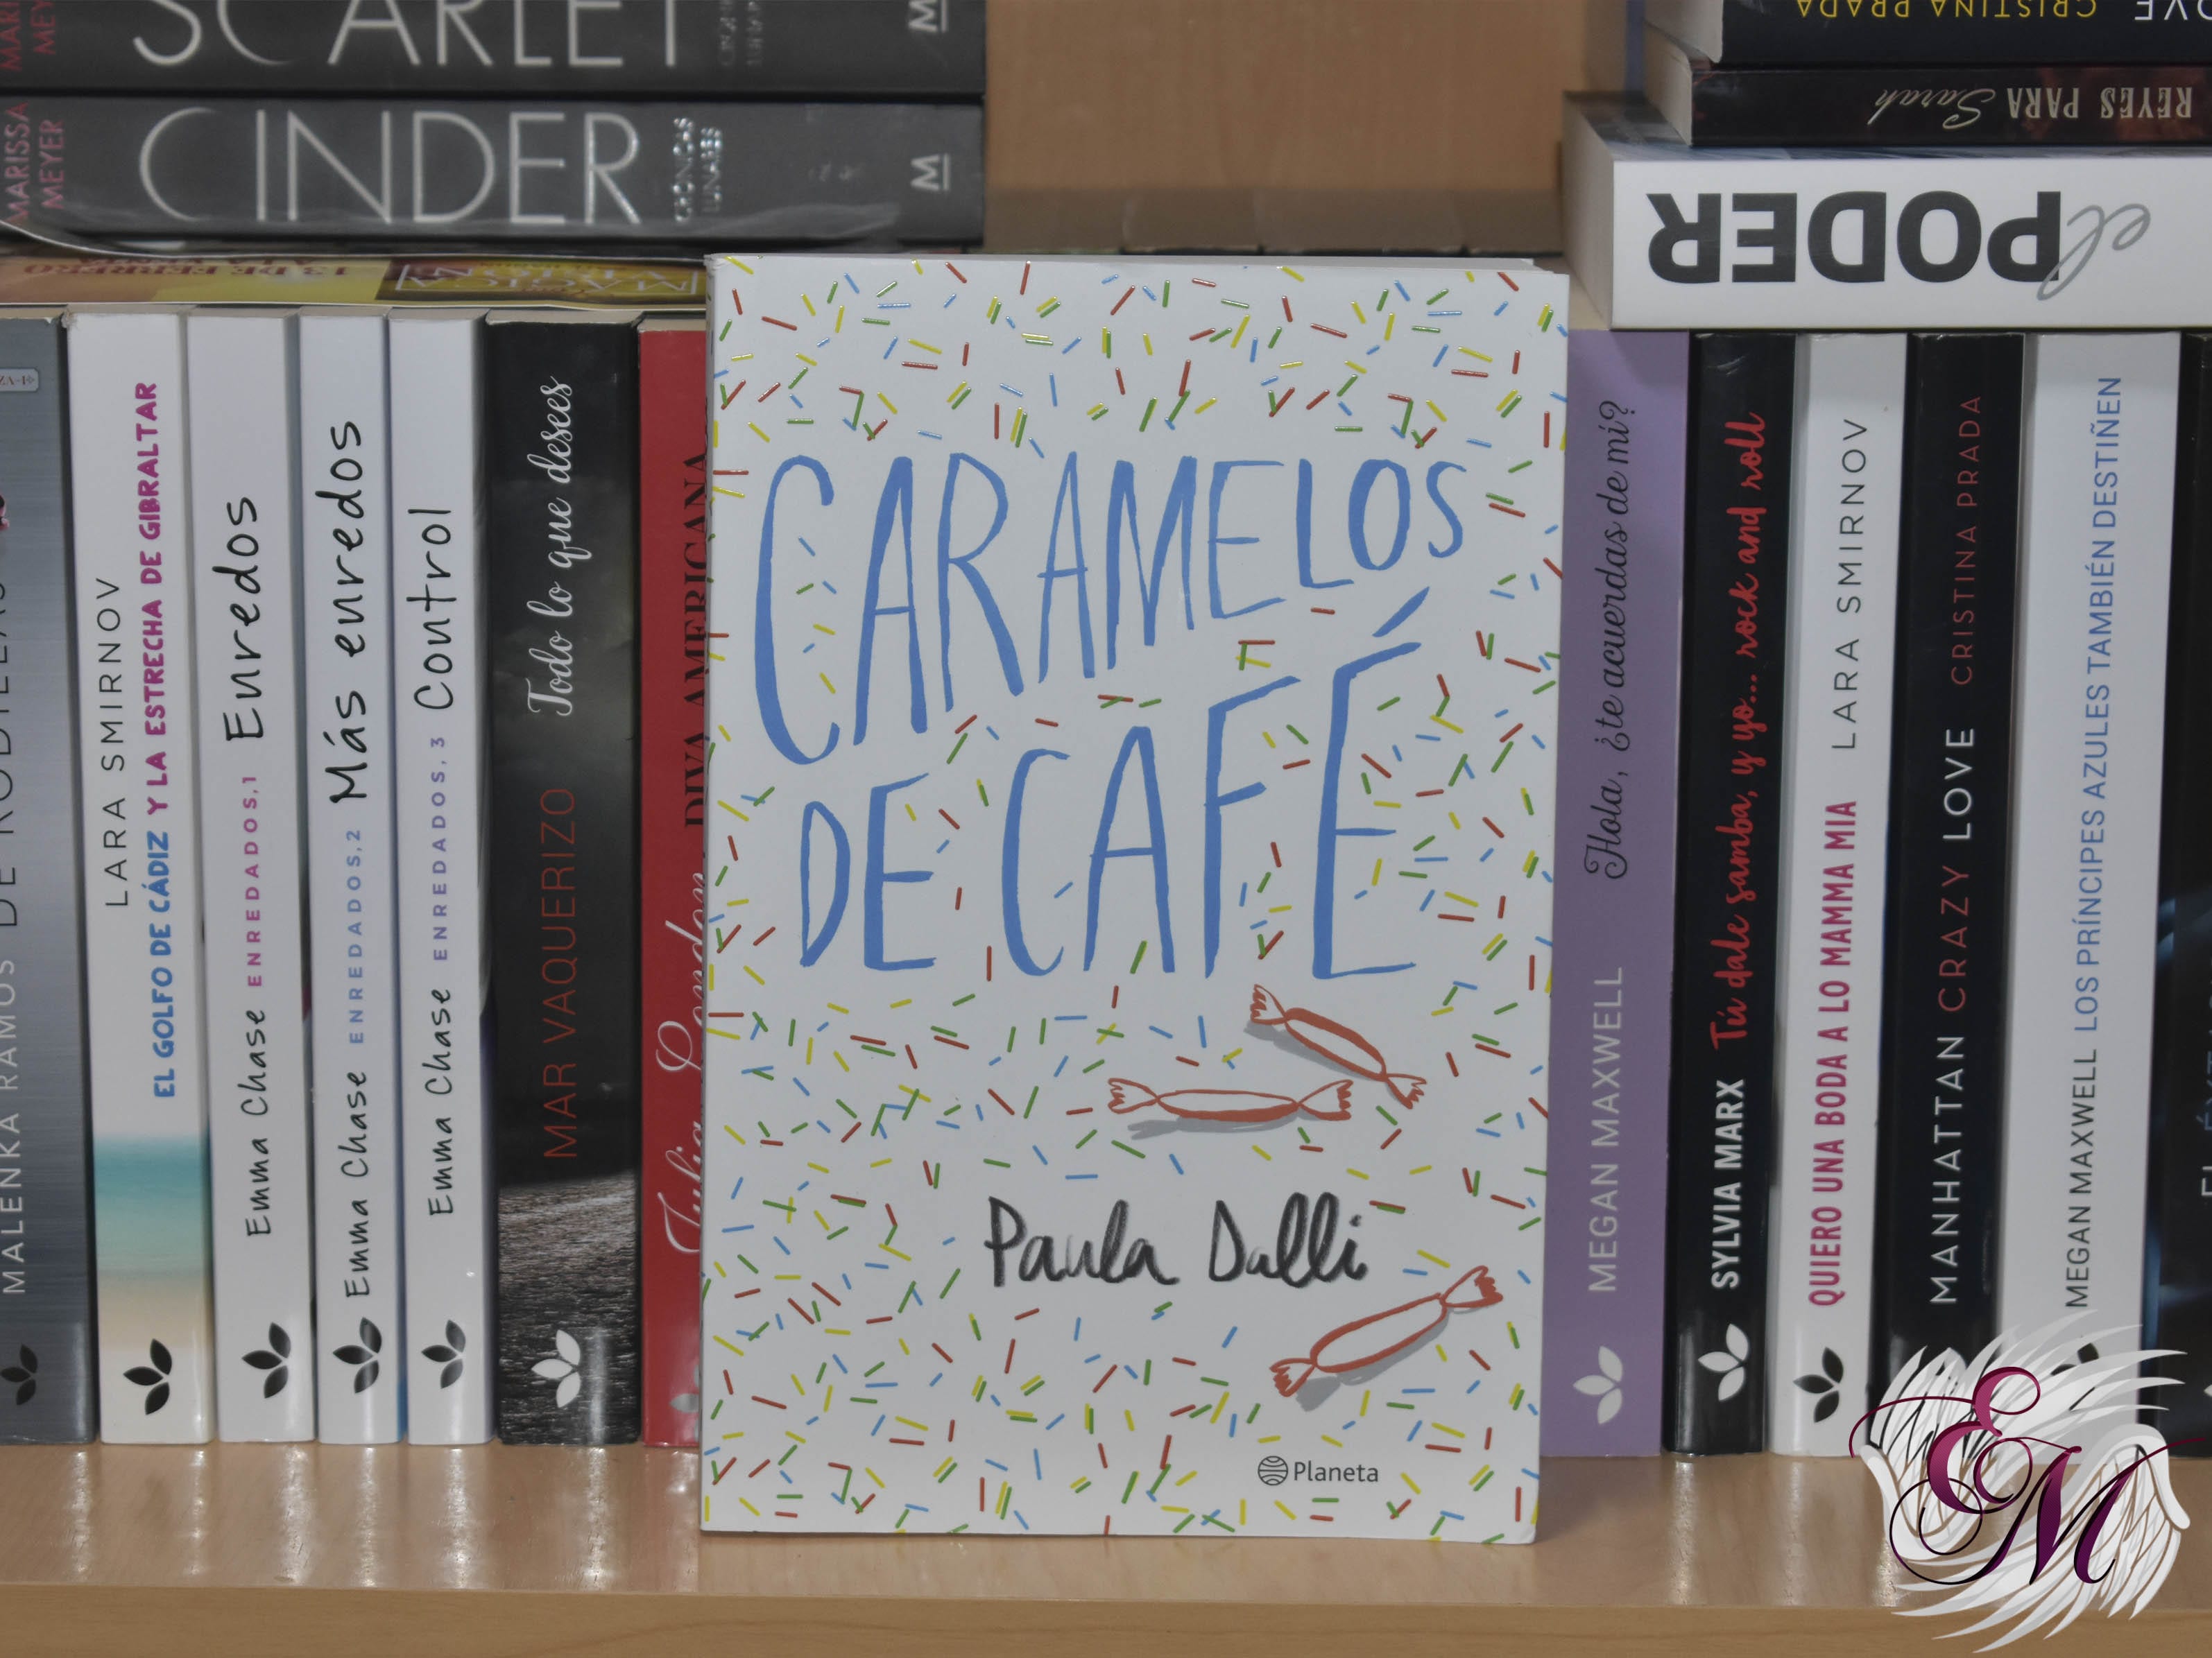 Caramelos de café, de Paula Dalli - Reseña